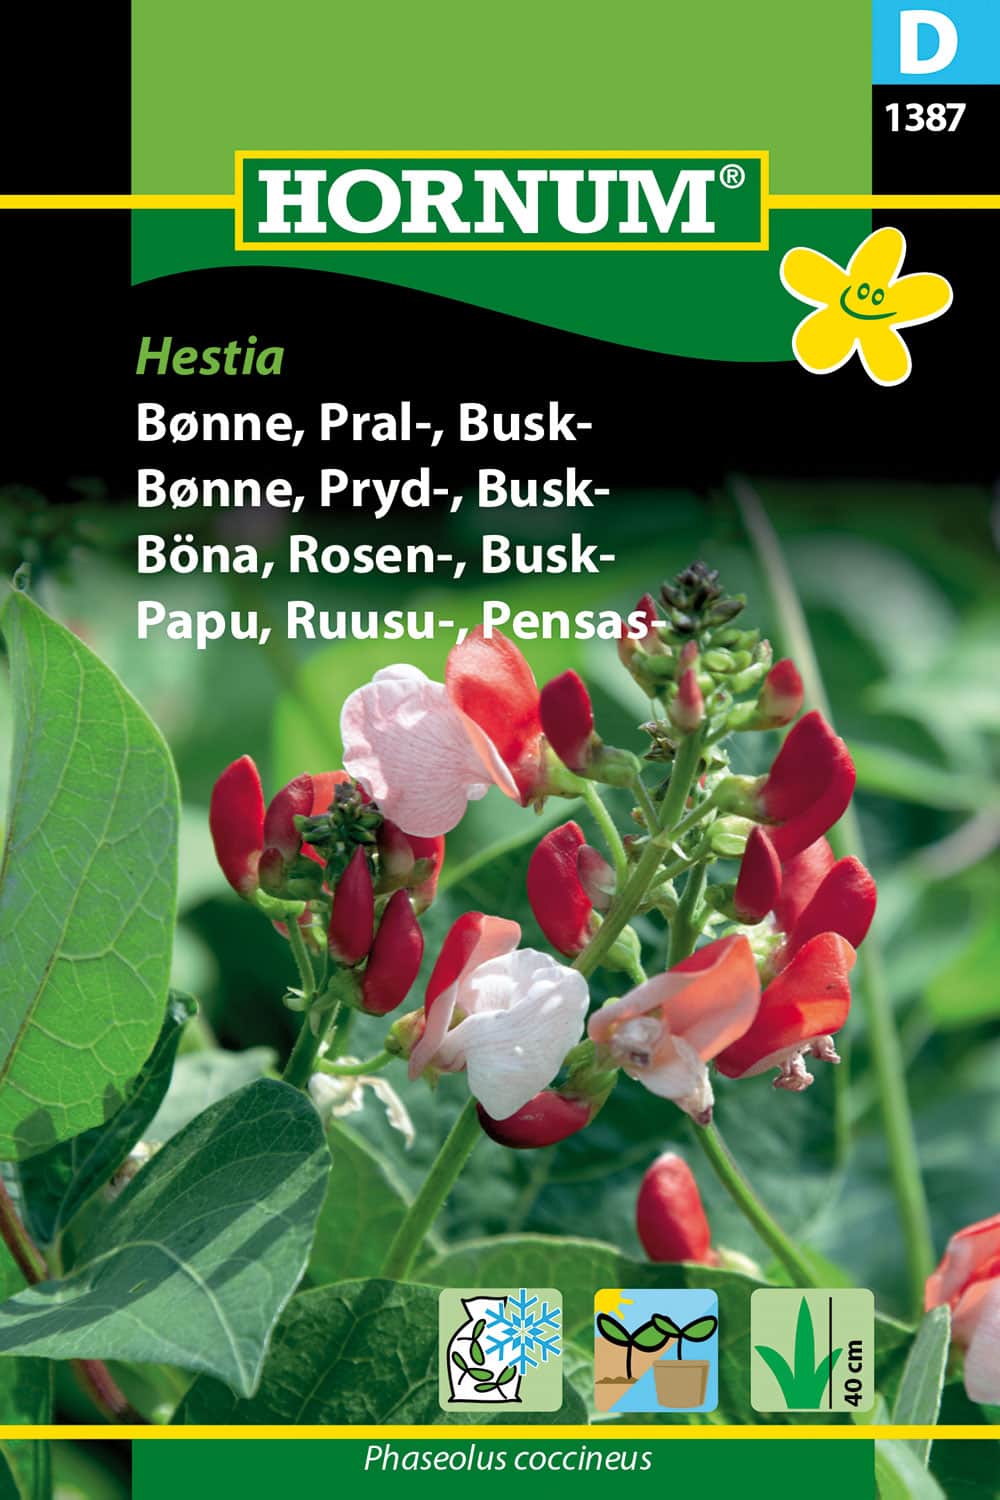 rosenbna-busk-hestia-fr-1